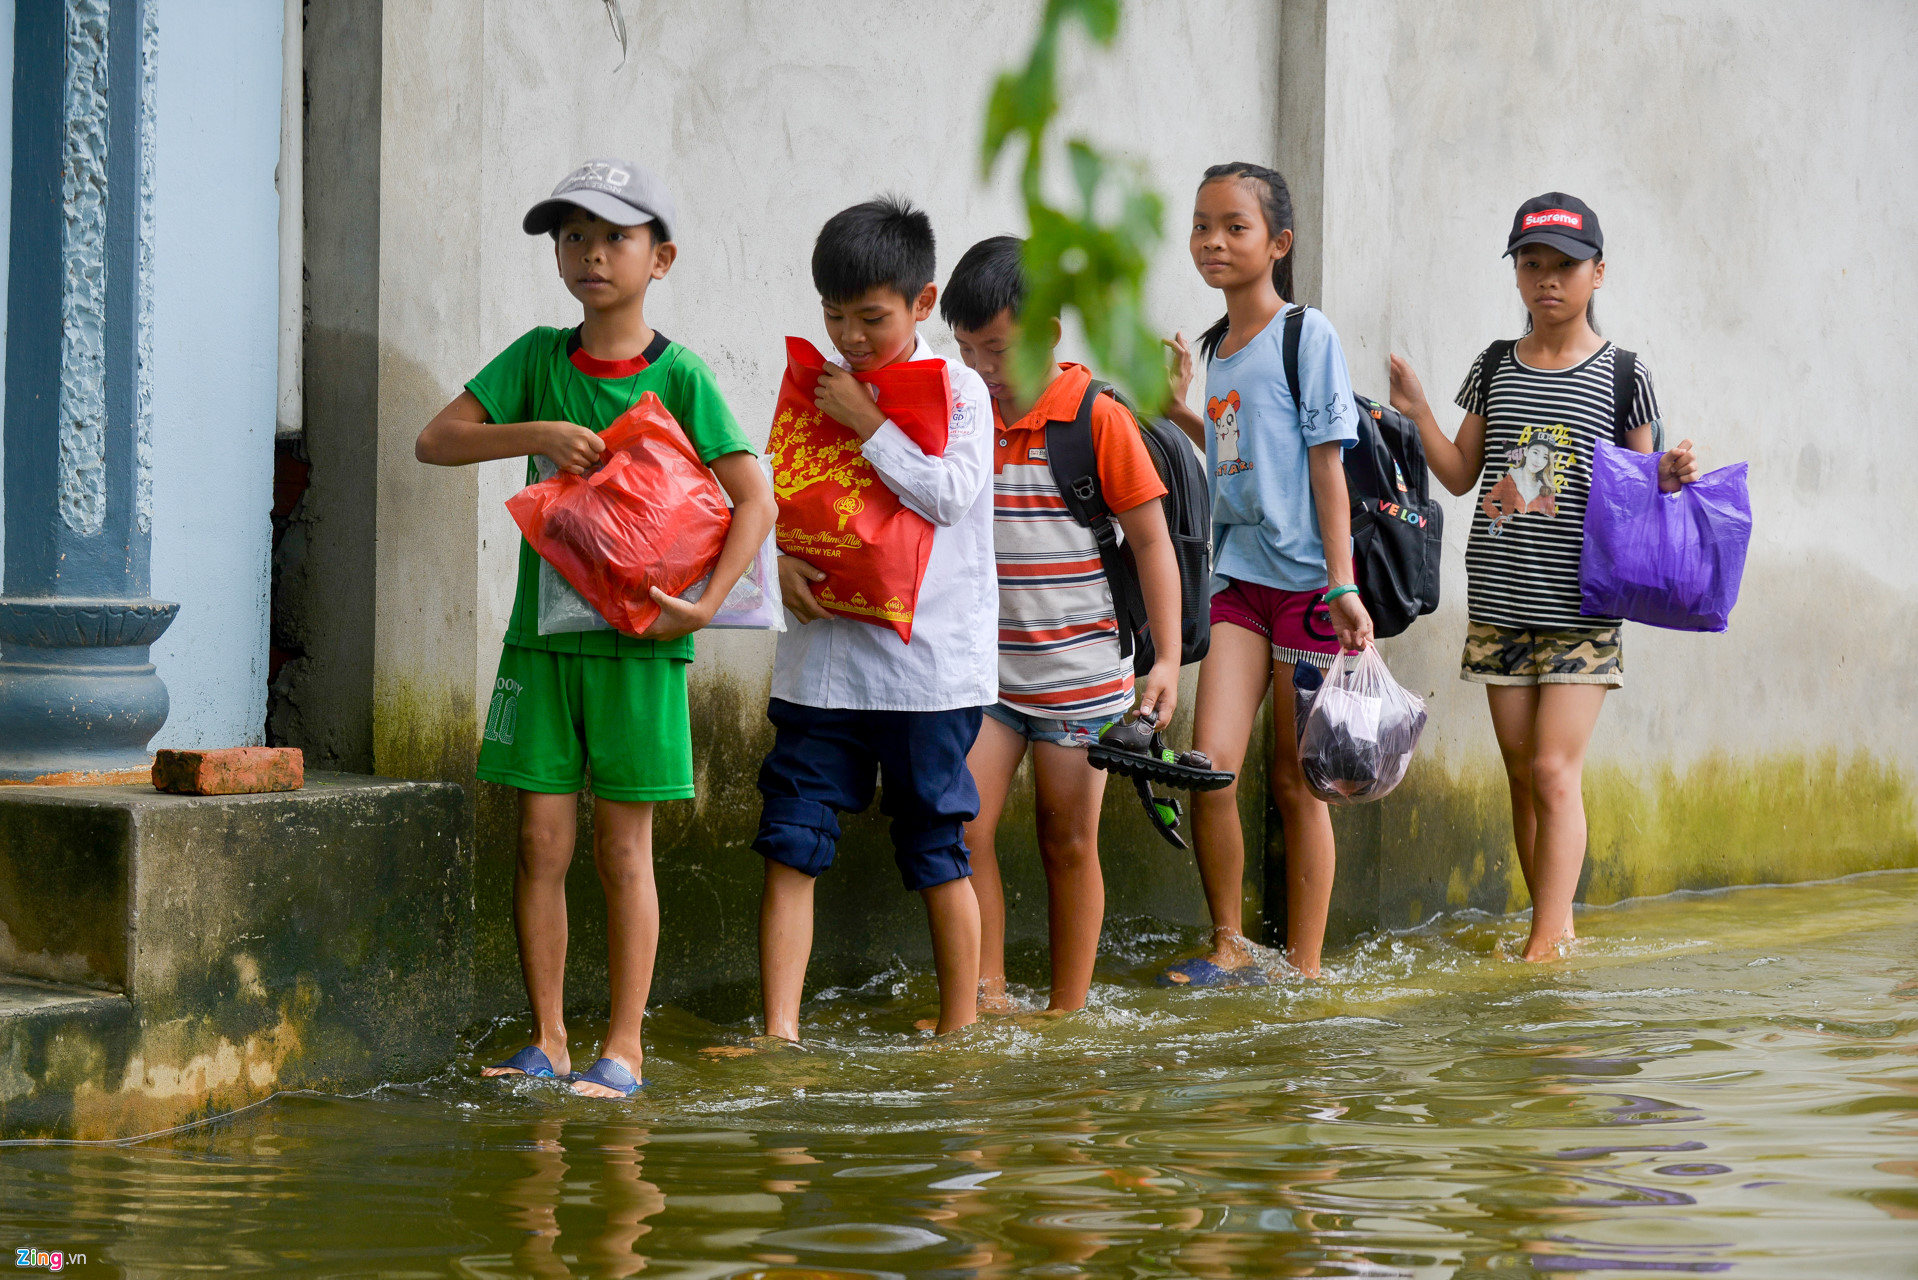 Nhiều em nhỏ phải trèo lên mái nhà hoặc lội nước để tới trường sau 2 tháng nghỉ hè.
